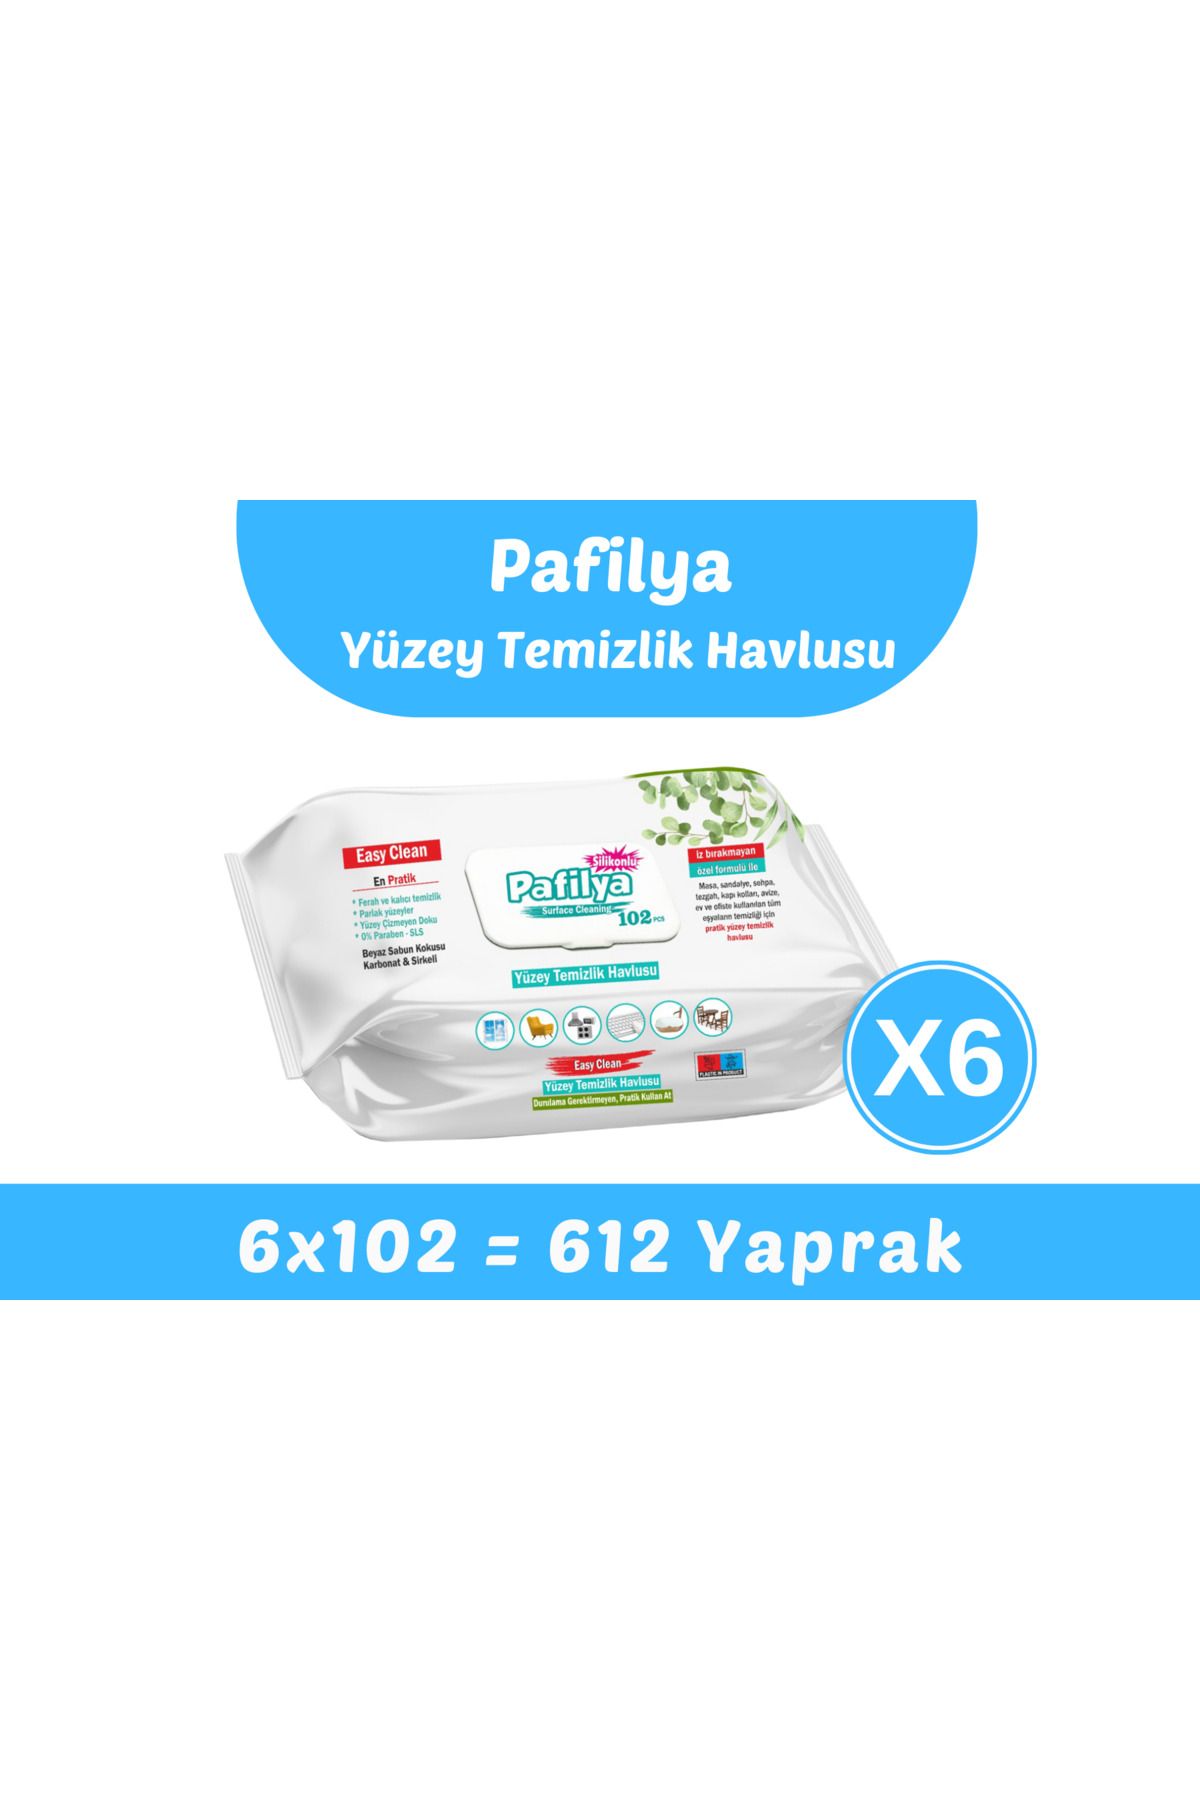 Pafilya Easy Clean Yüzey Temizlik Havlusu 6x102 (612 Yaprak)